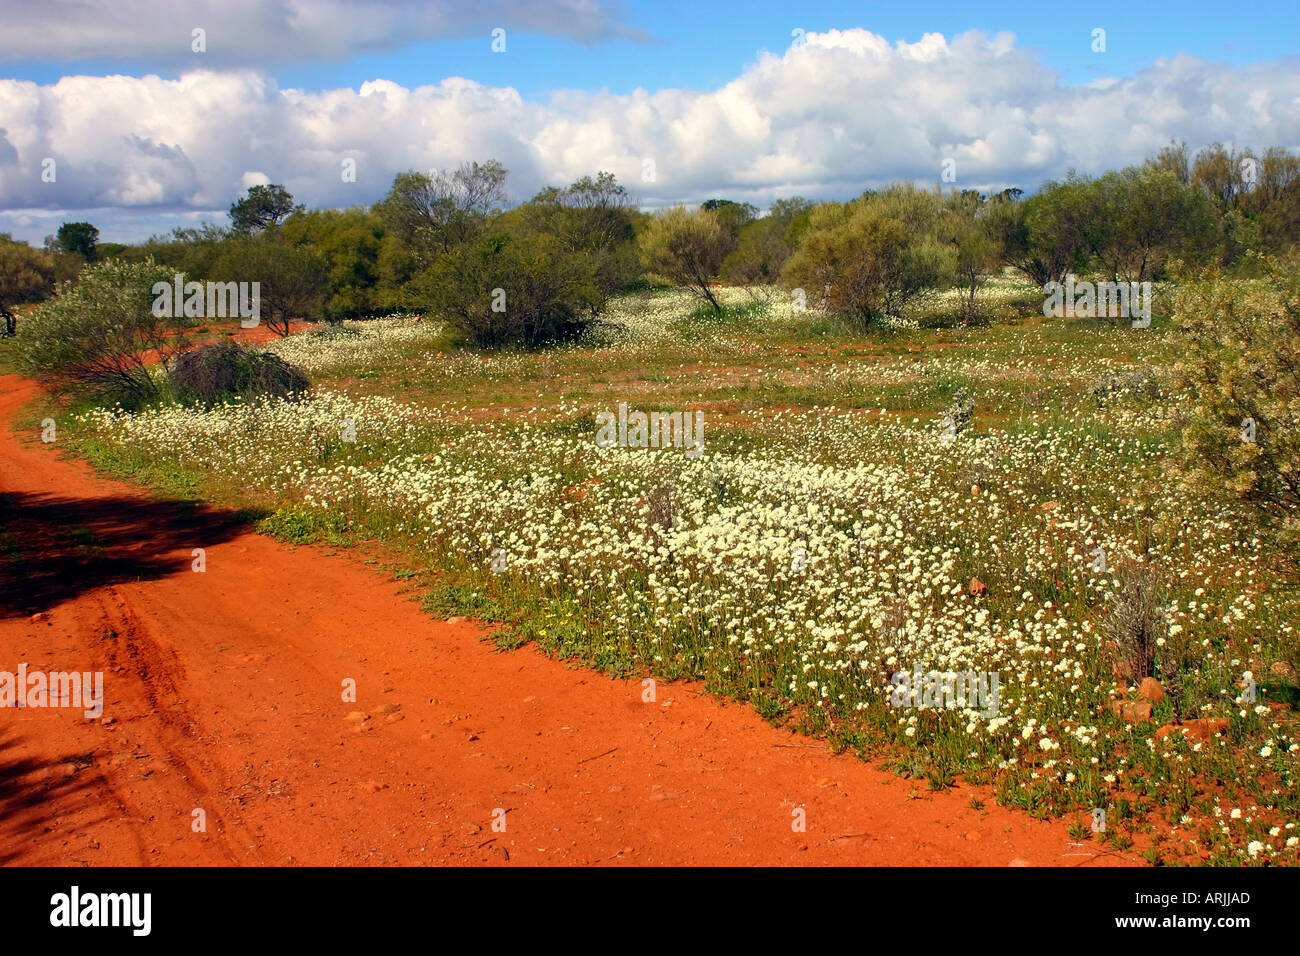 Desert wild flowers along red dirt road near Kalbarri Western Australia Stock Photo